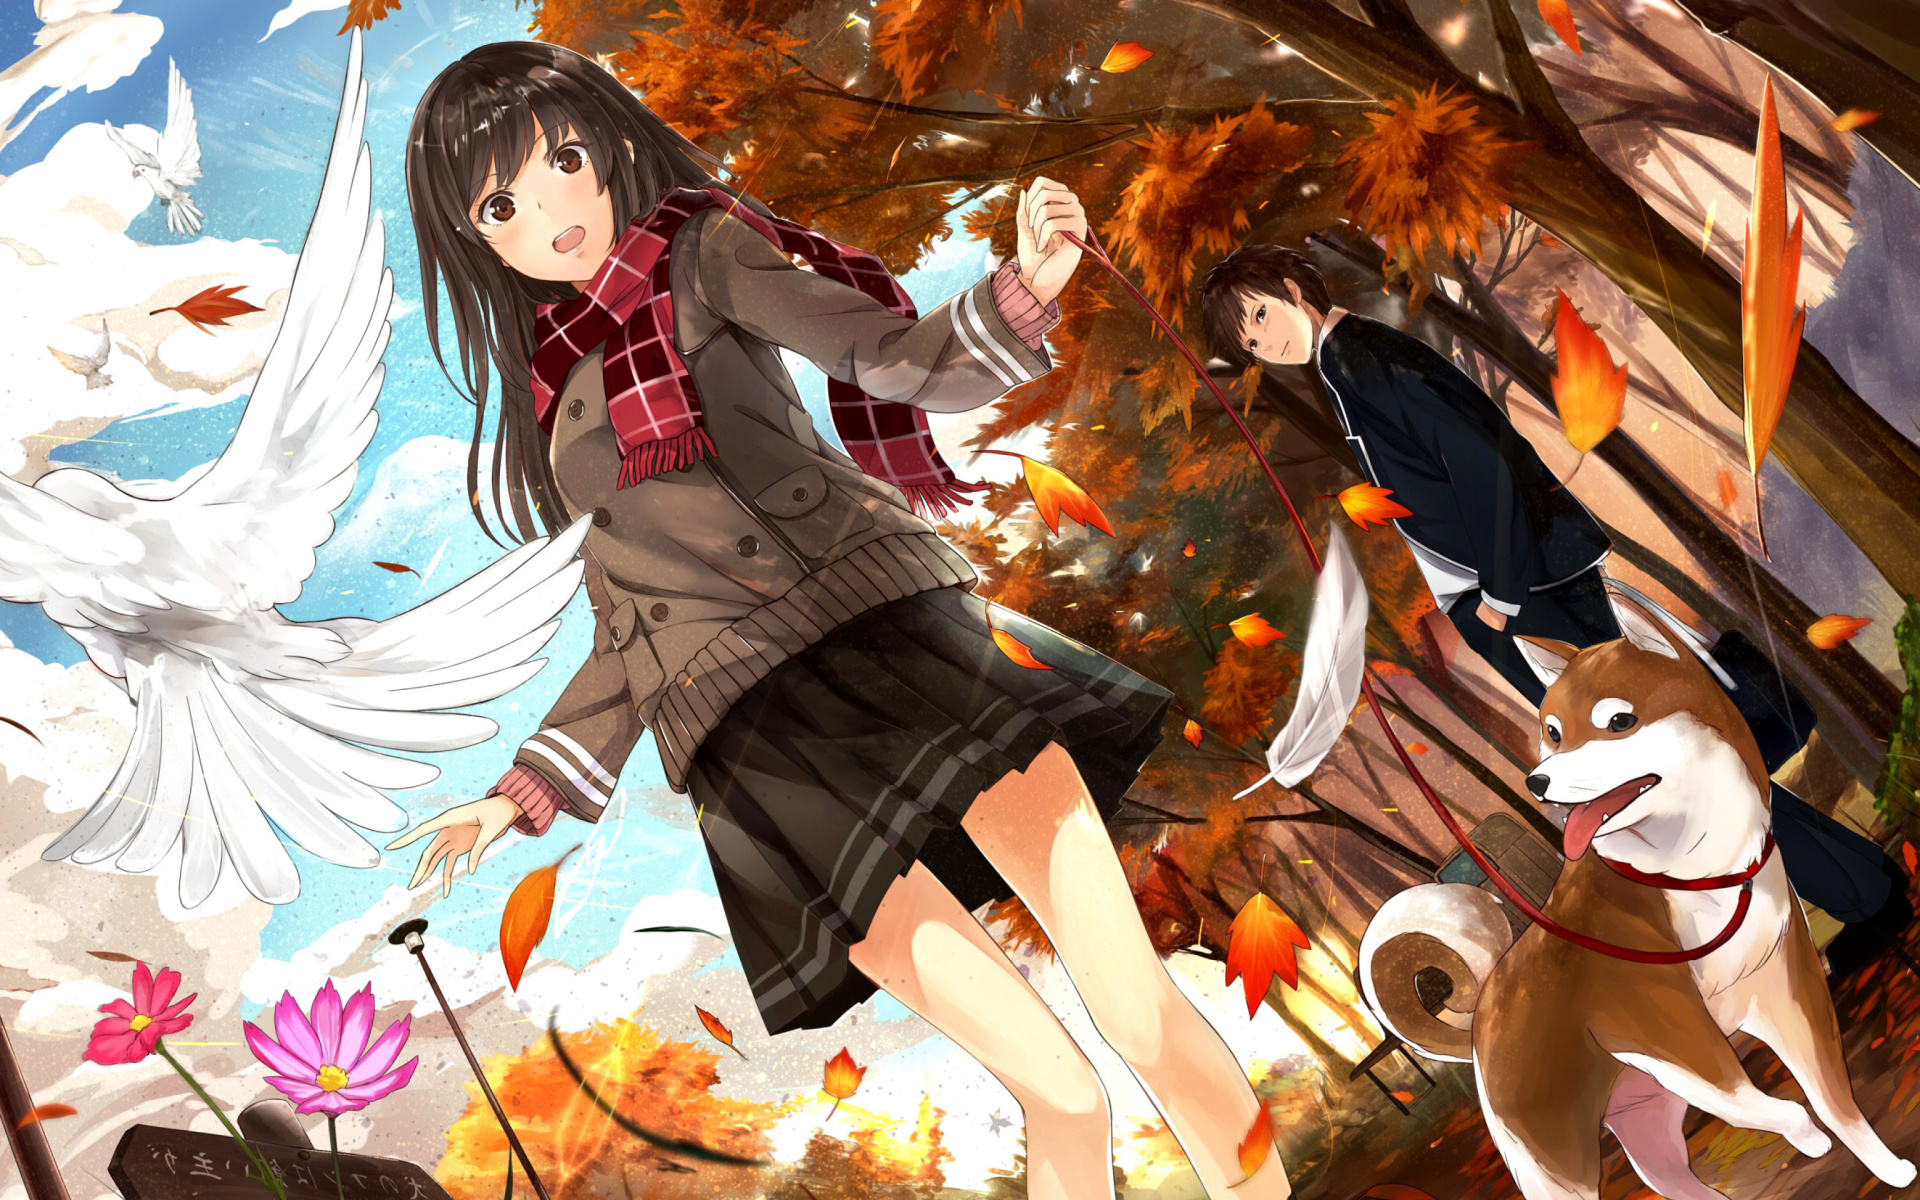 Fondos de Pantalla de Anime en Movimiento PC Android  iOS